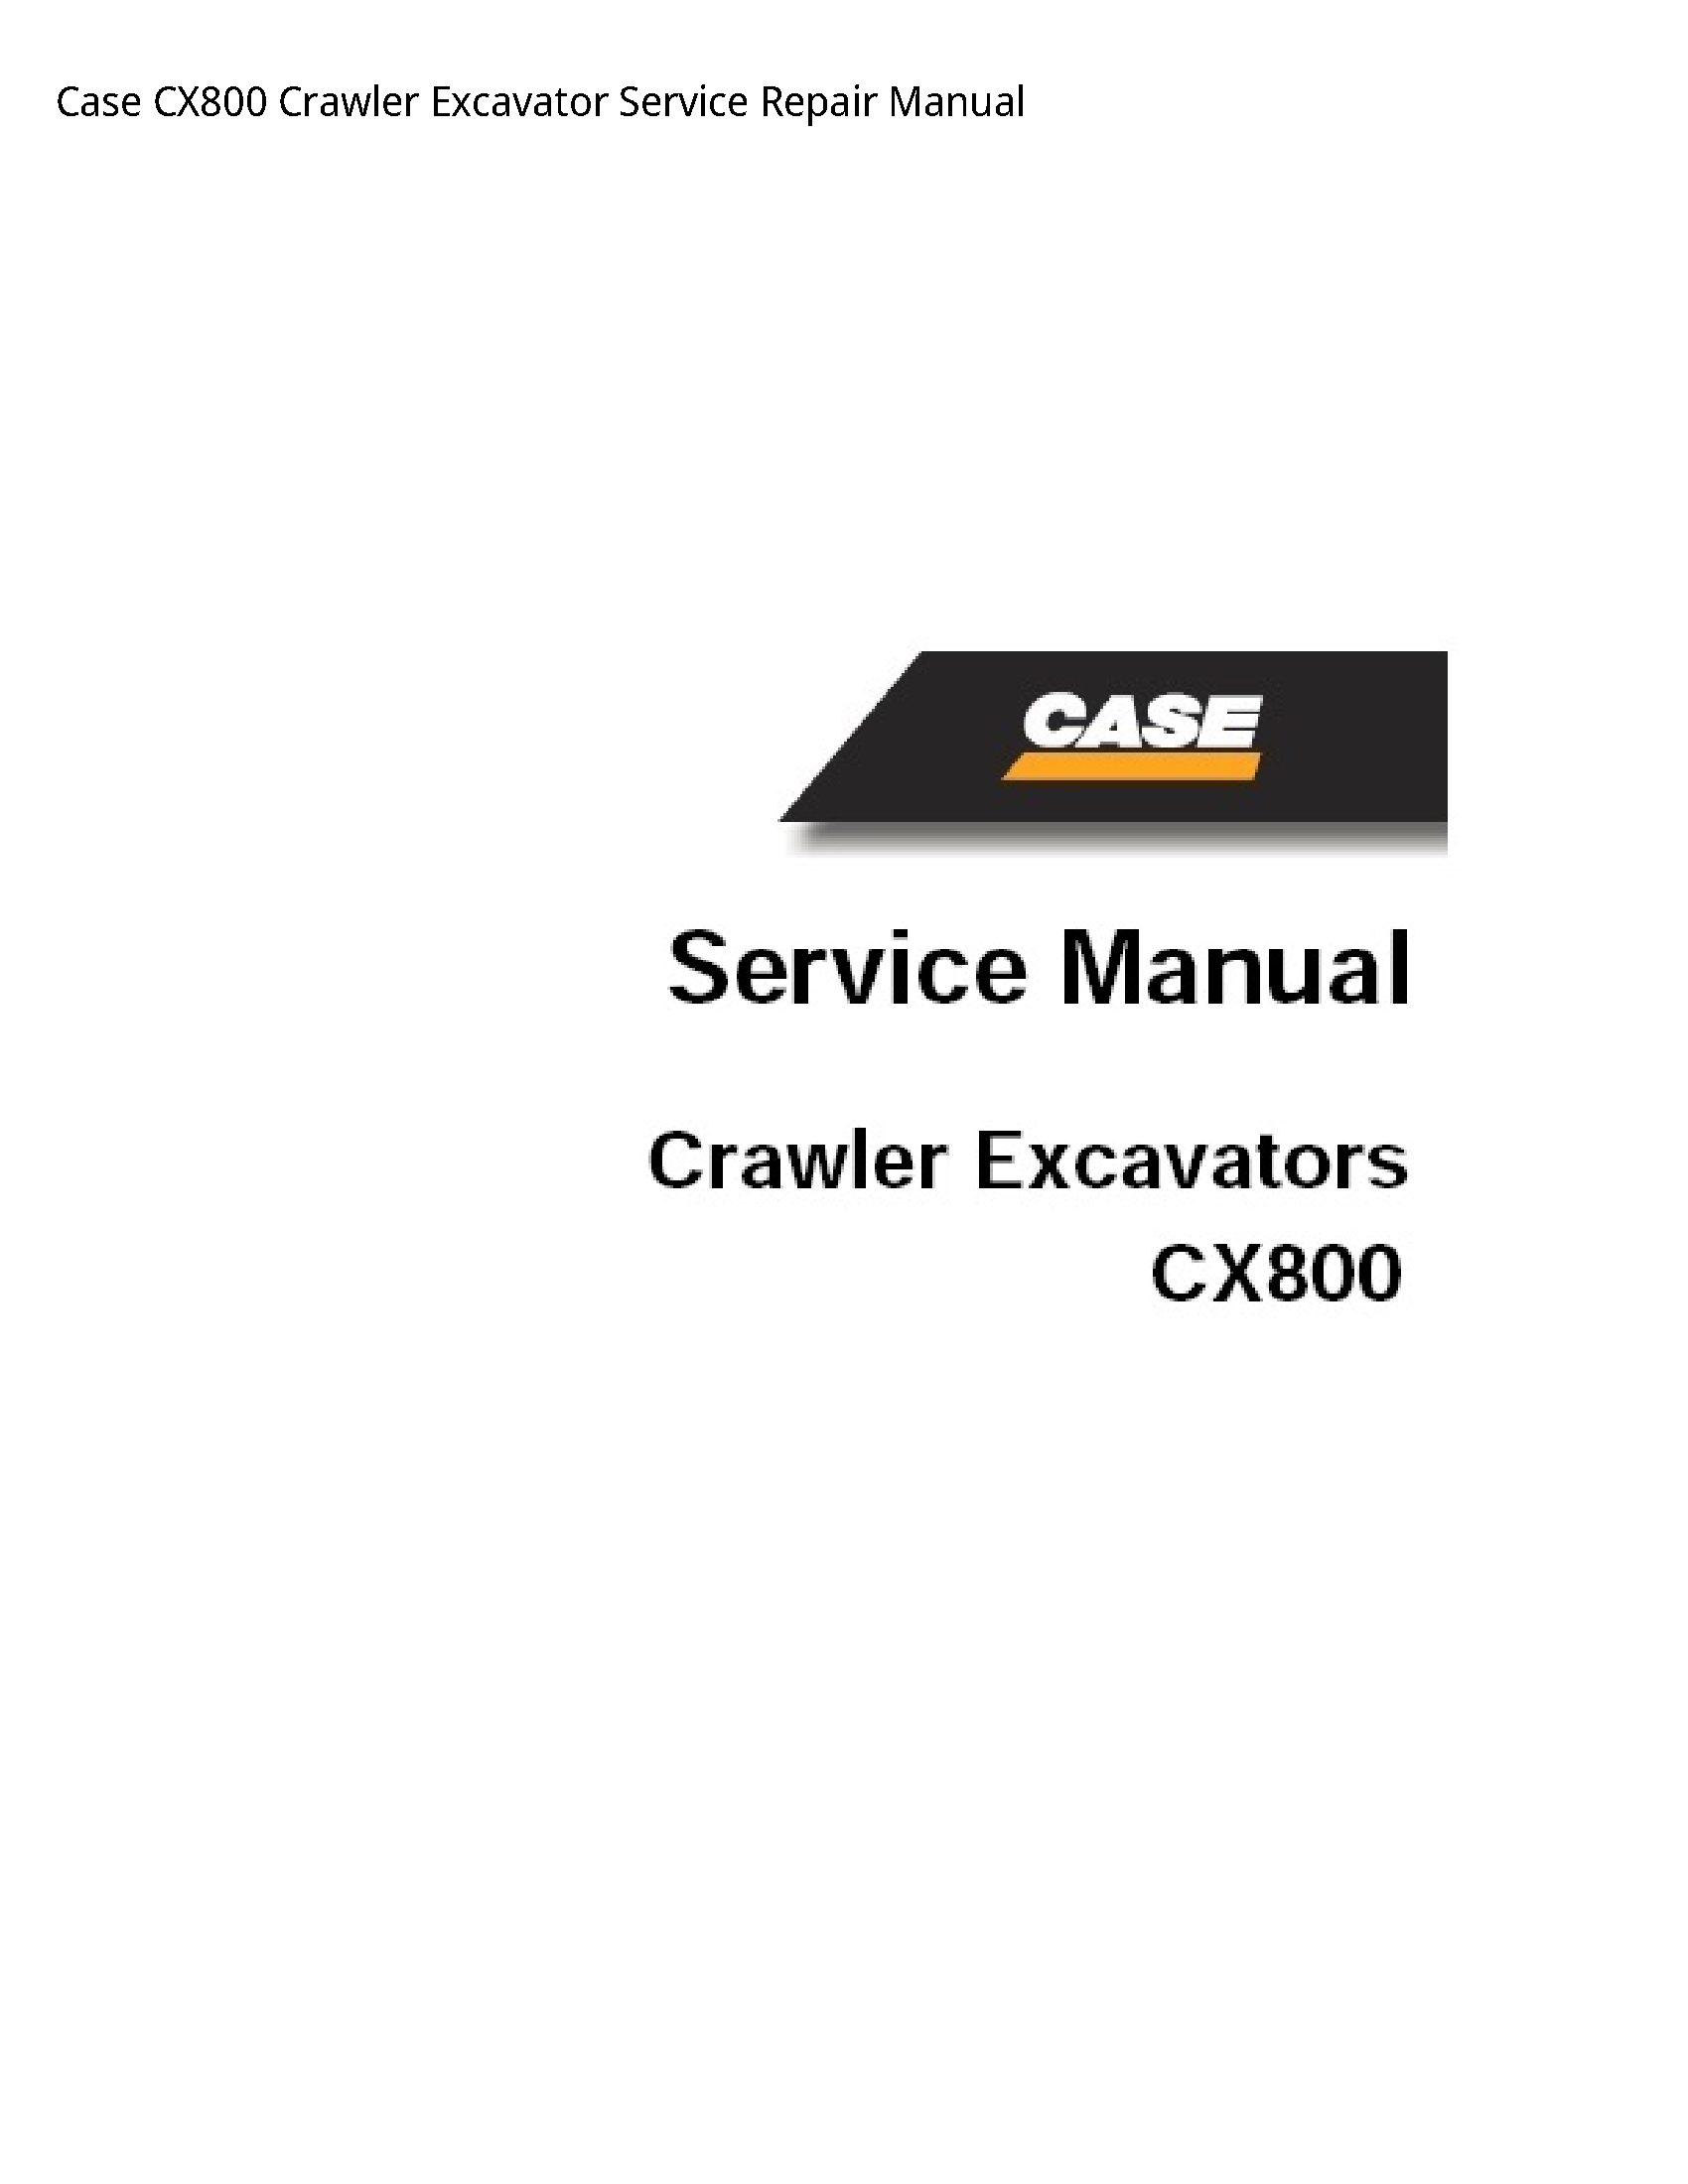 Case/Case IH CX800 Crawler Excavator manual